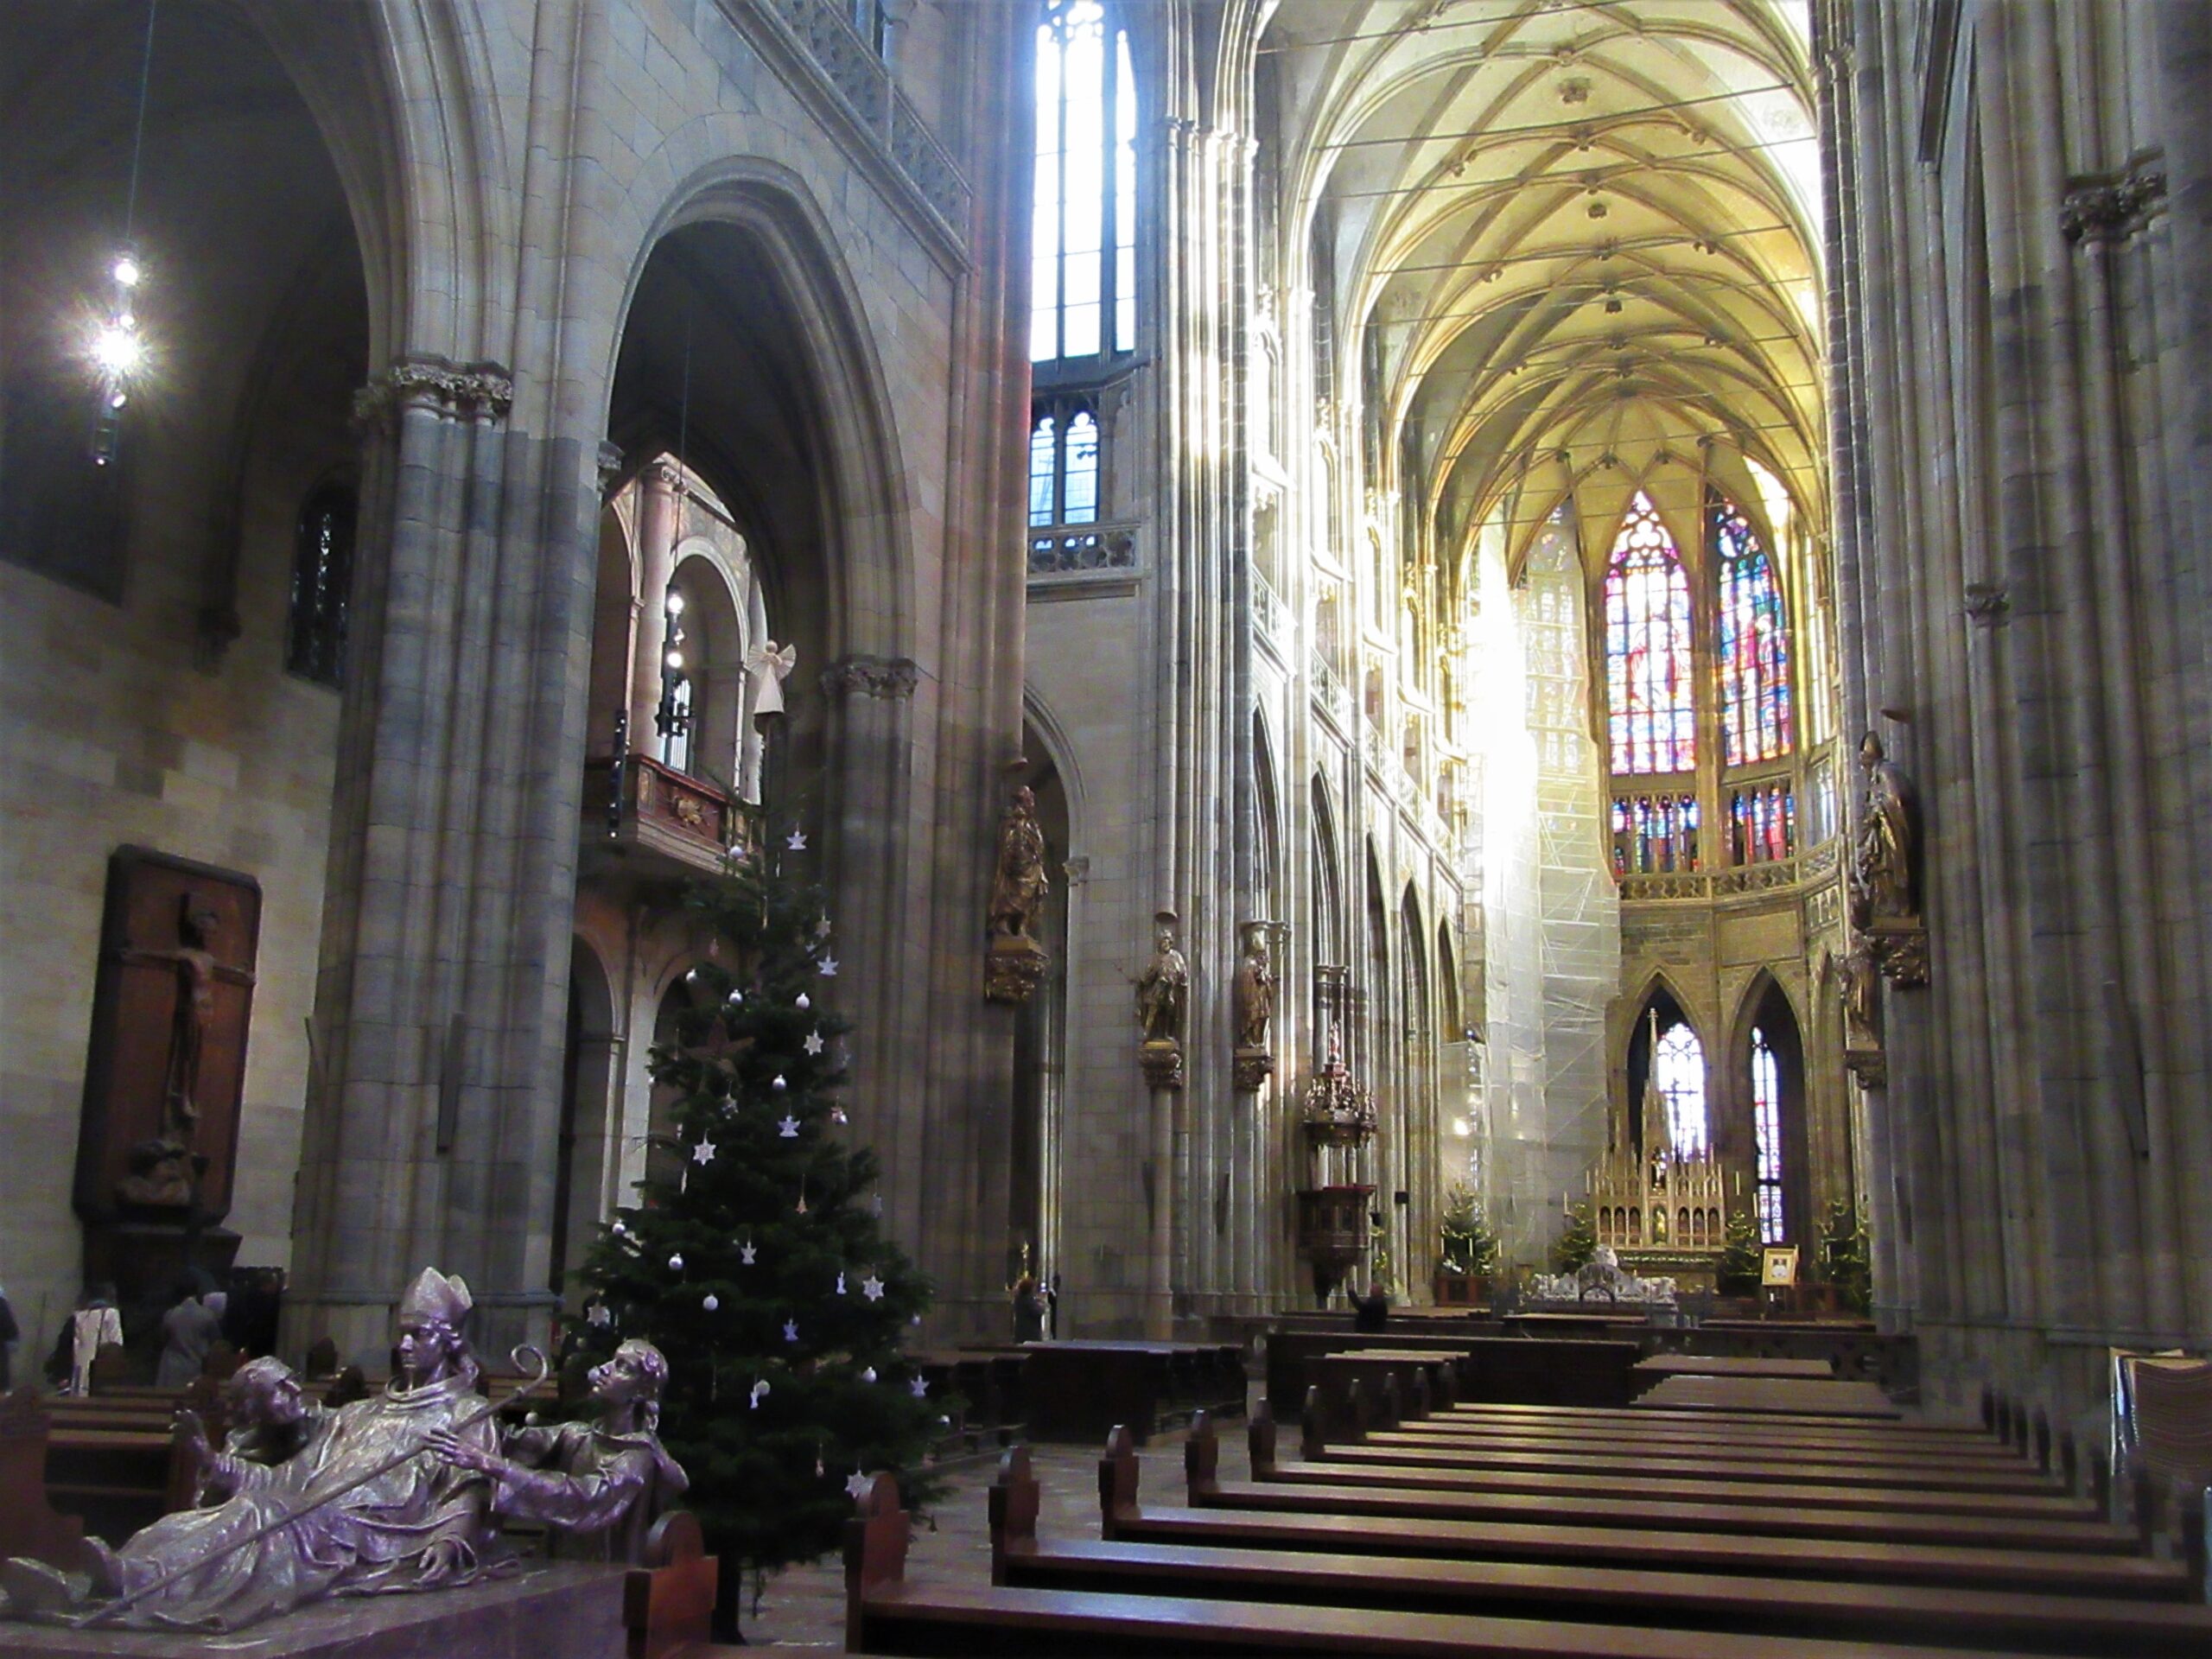 La cathédrale Saint-Guy à Prague